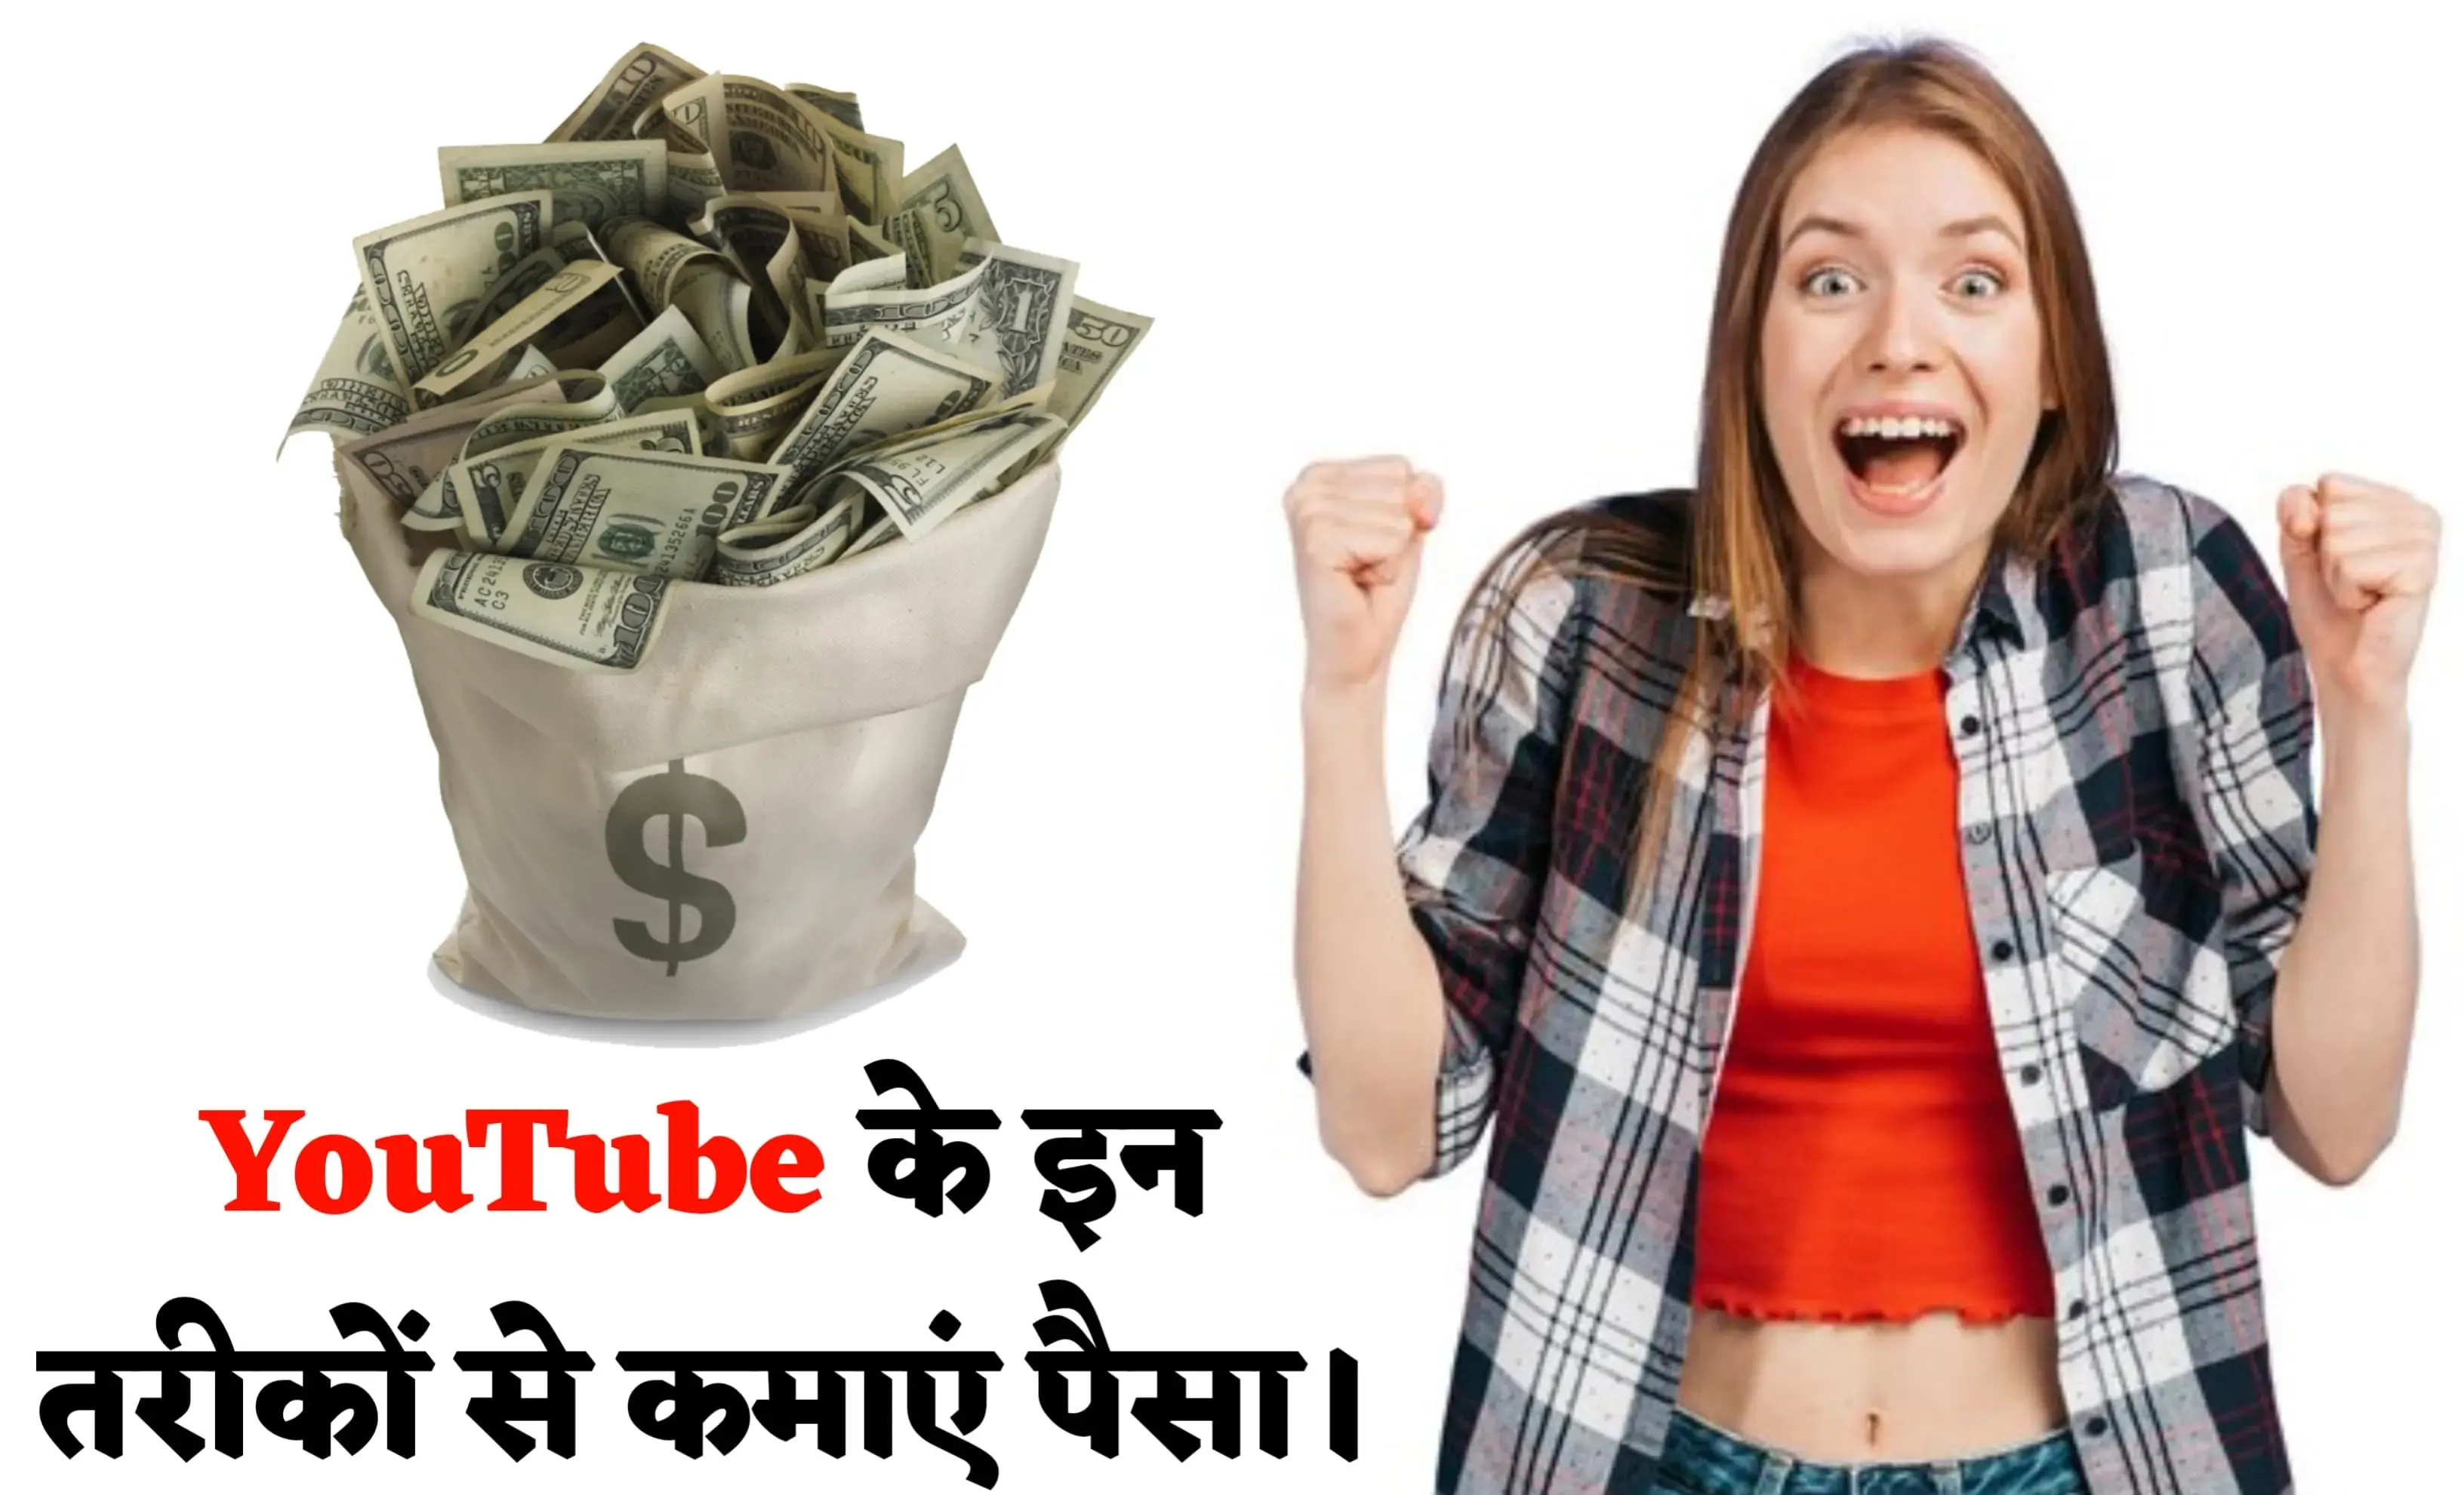 YouTube Se Paise Kaise Kamaye - सुपर तरीके YouTube से पैसे कमाने के।